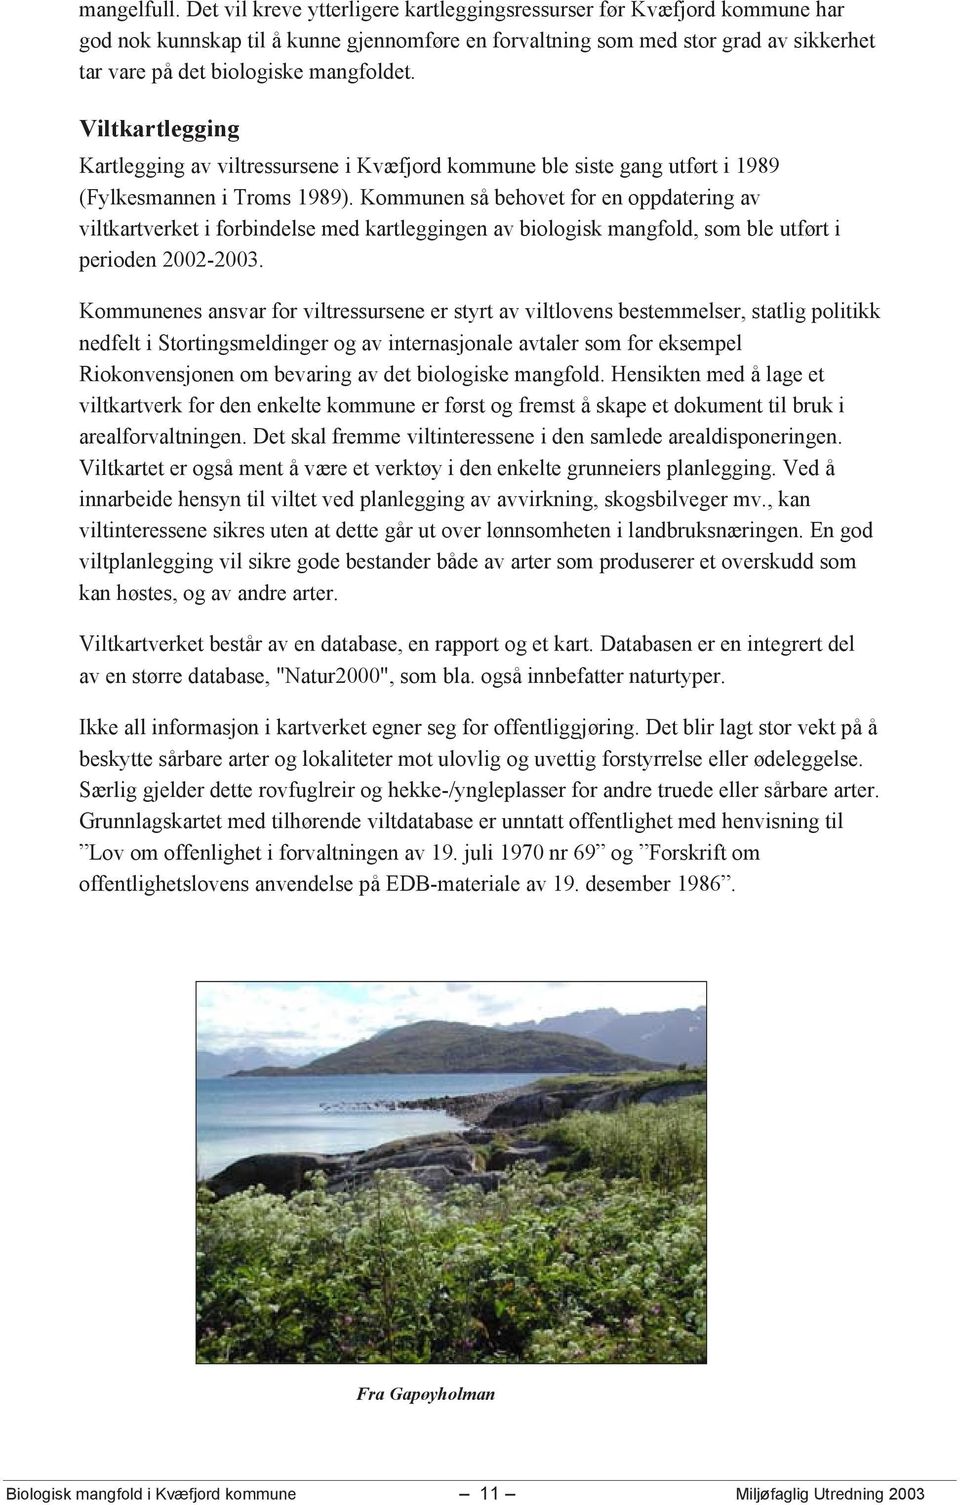 Viltkartlegging Kartlegging av viltressursene i Kvæfjord kommune ble siste gang utført i 1989 (Fylkesmannen i Troms 1989).